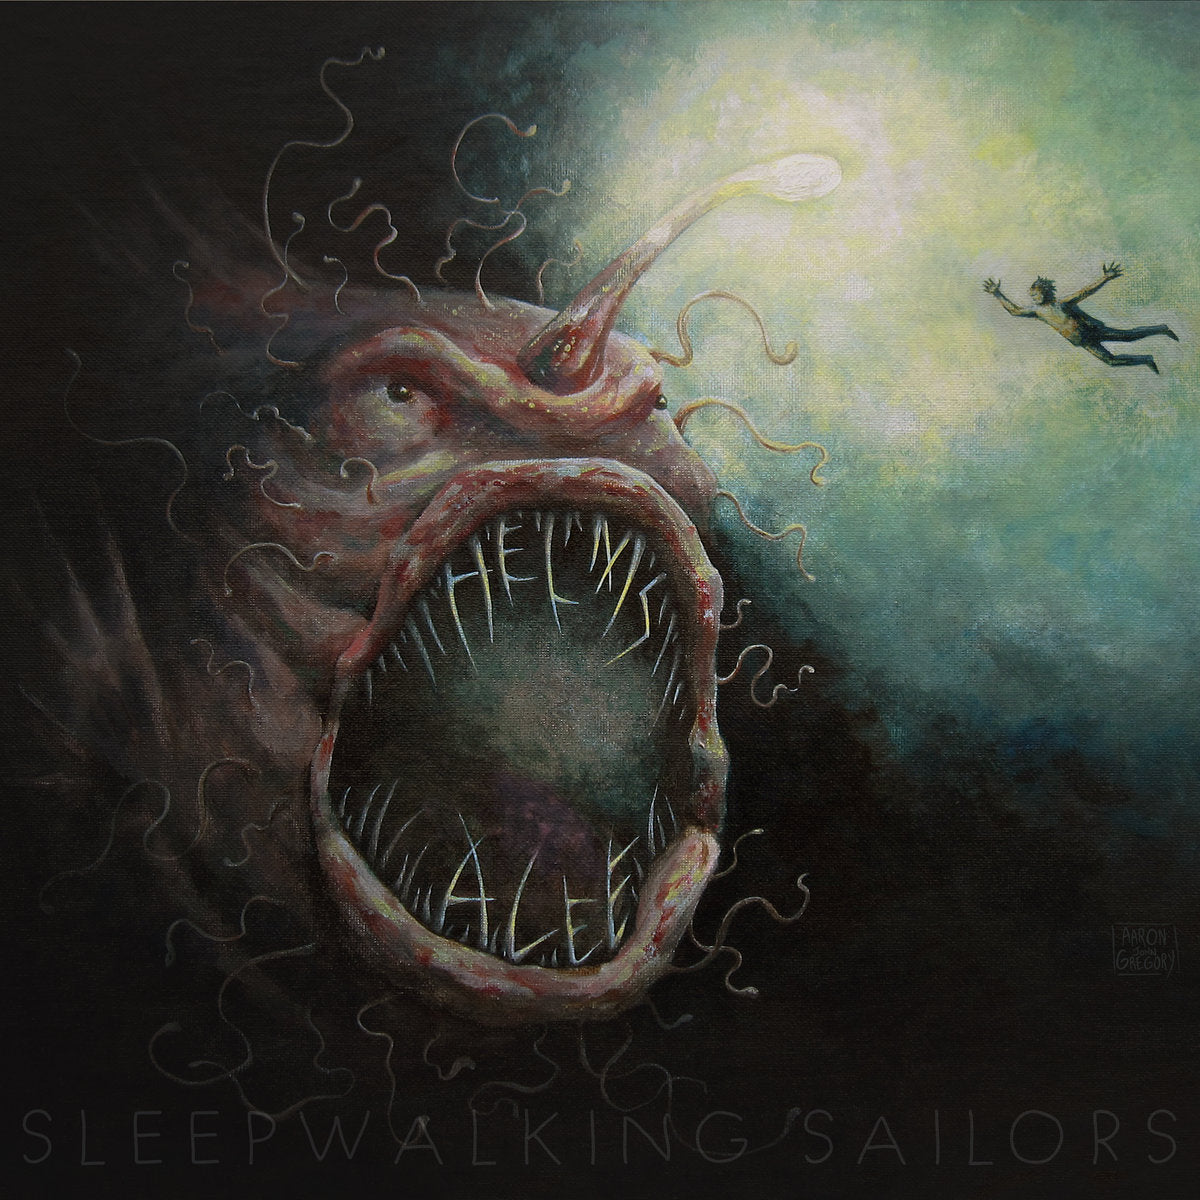 HELMS ALEE "Sleepwalking Sailors" CD